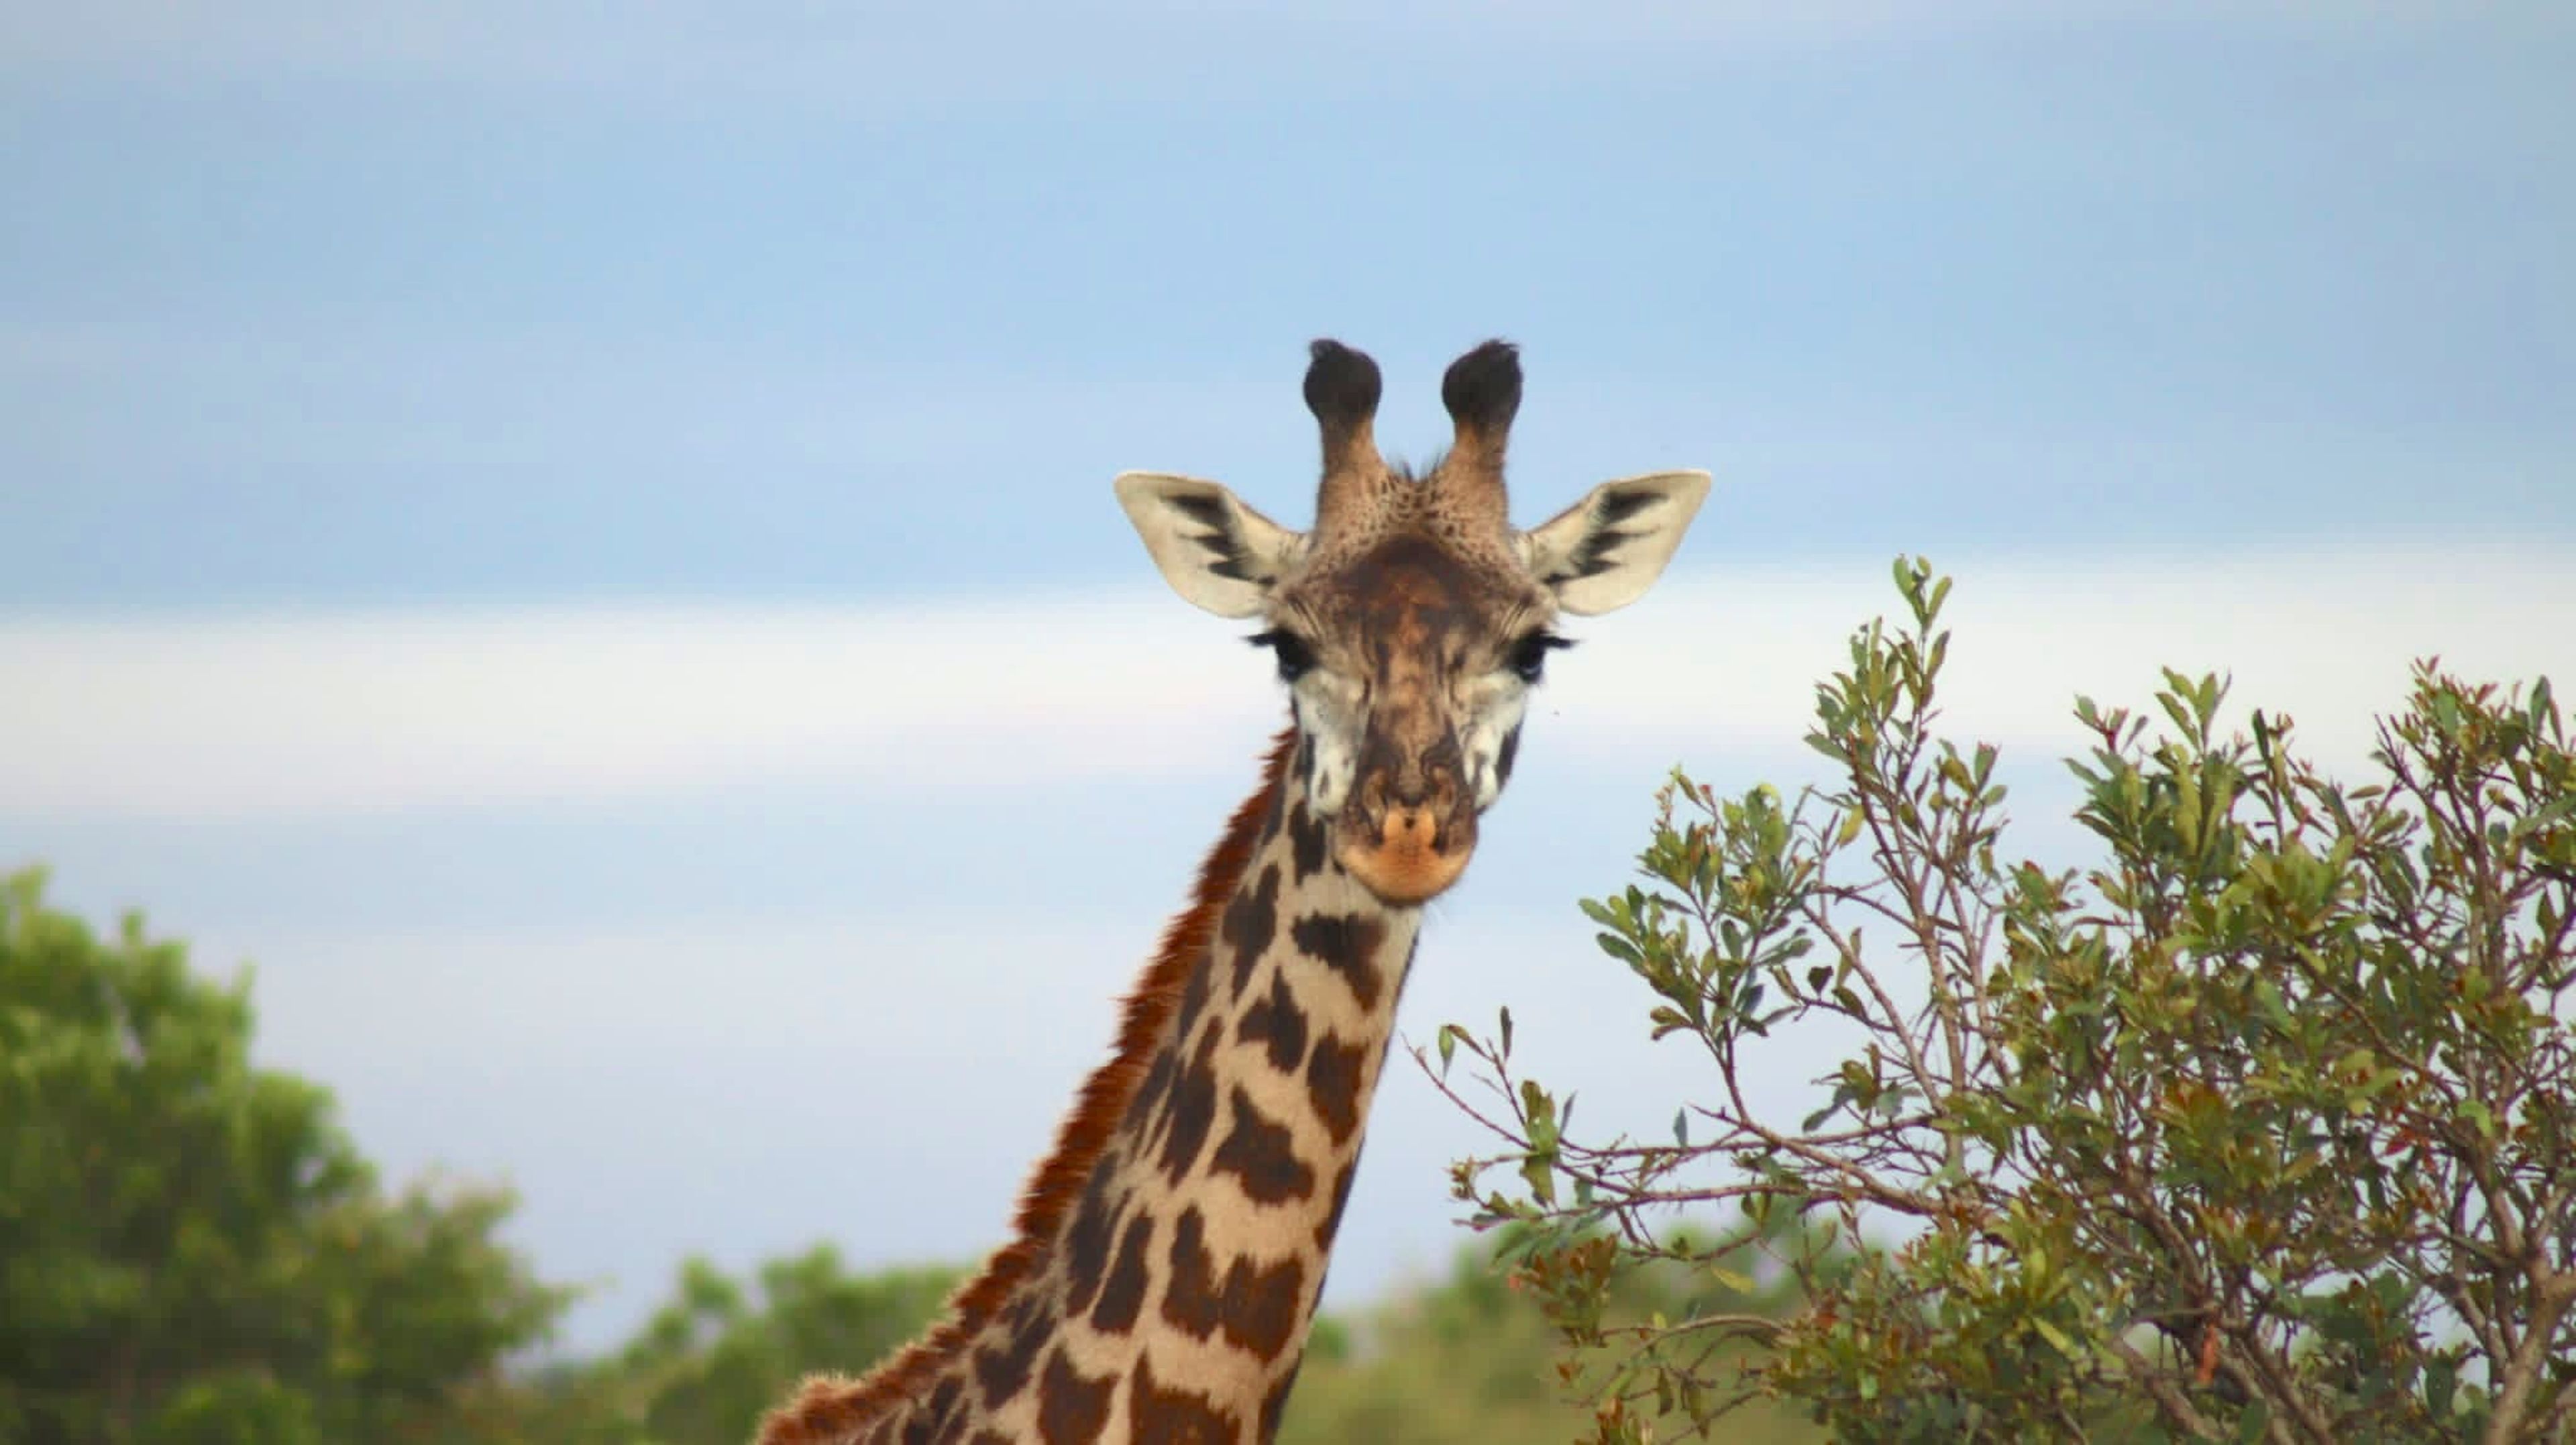 Una jirafa avistada durante un safari en Kenia.